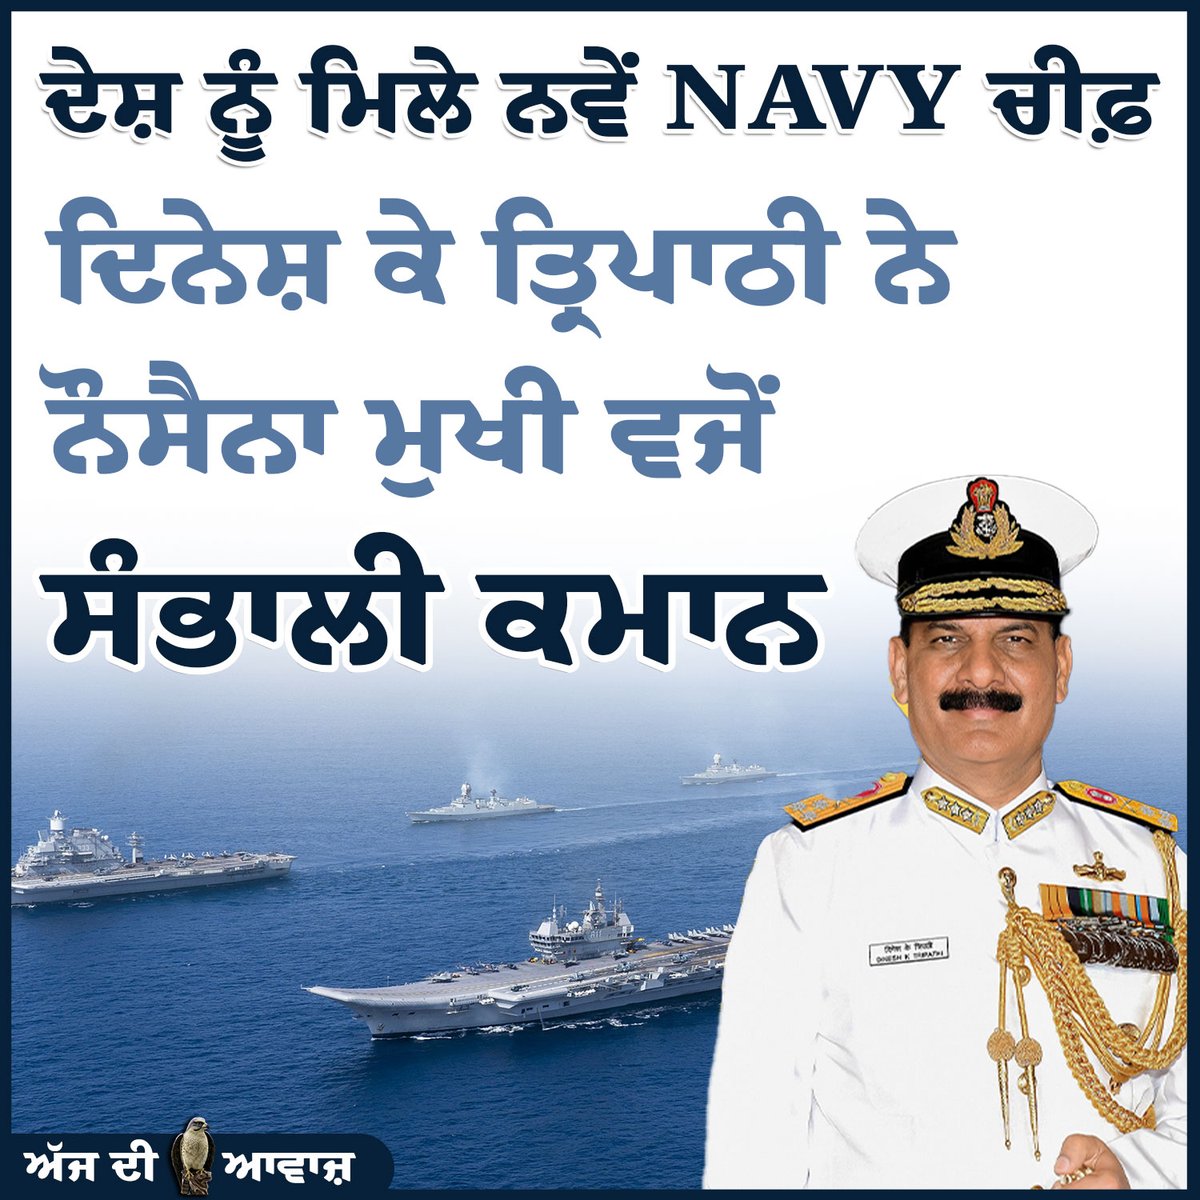 ਦੇਸ਼ ਨੂੰ ਮਿਲੇ ਨਵੇਂ NAVY ਚੀਫ਼

#india #punjab #dailynews #Ajdiawaaz #PunjabiNews #indiannavy #navy #indianarmy